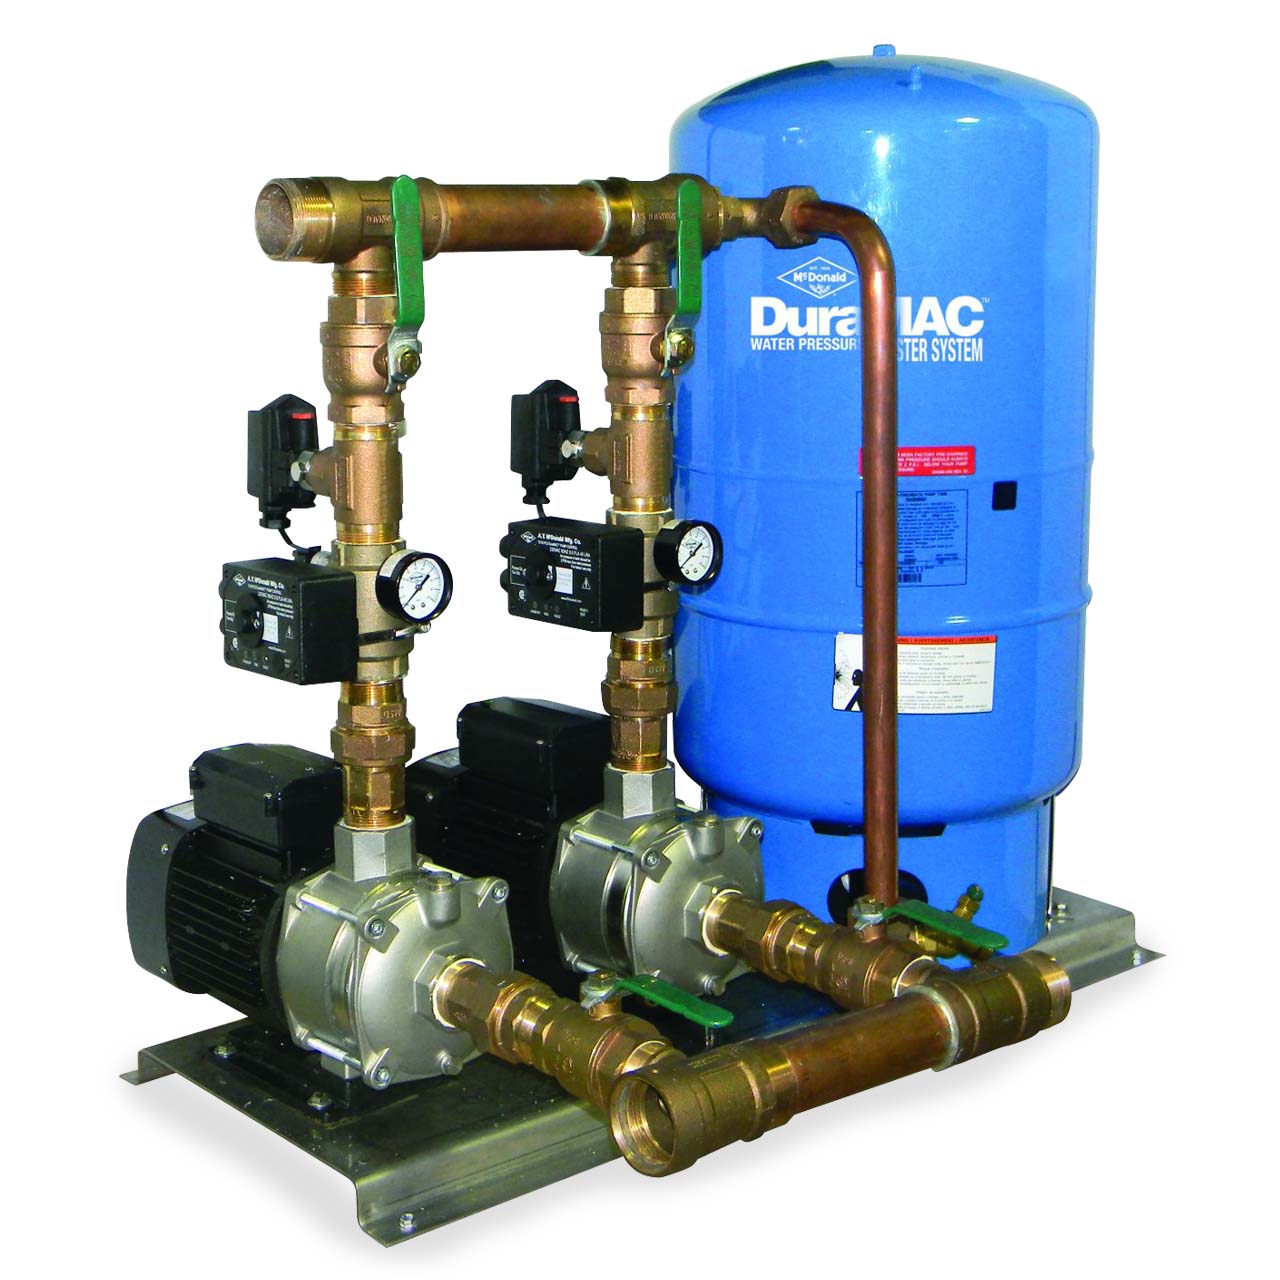 Model: 17044C120PC2-D DuraMac Duplex Water Pressure Booster System Image